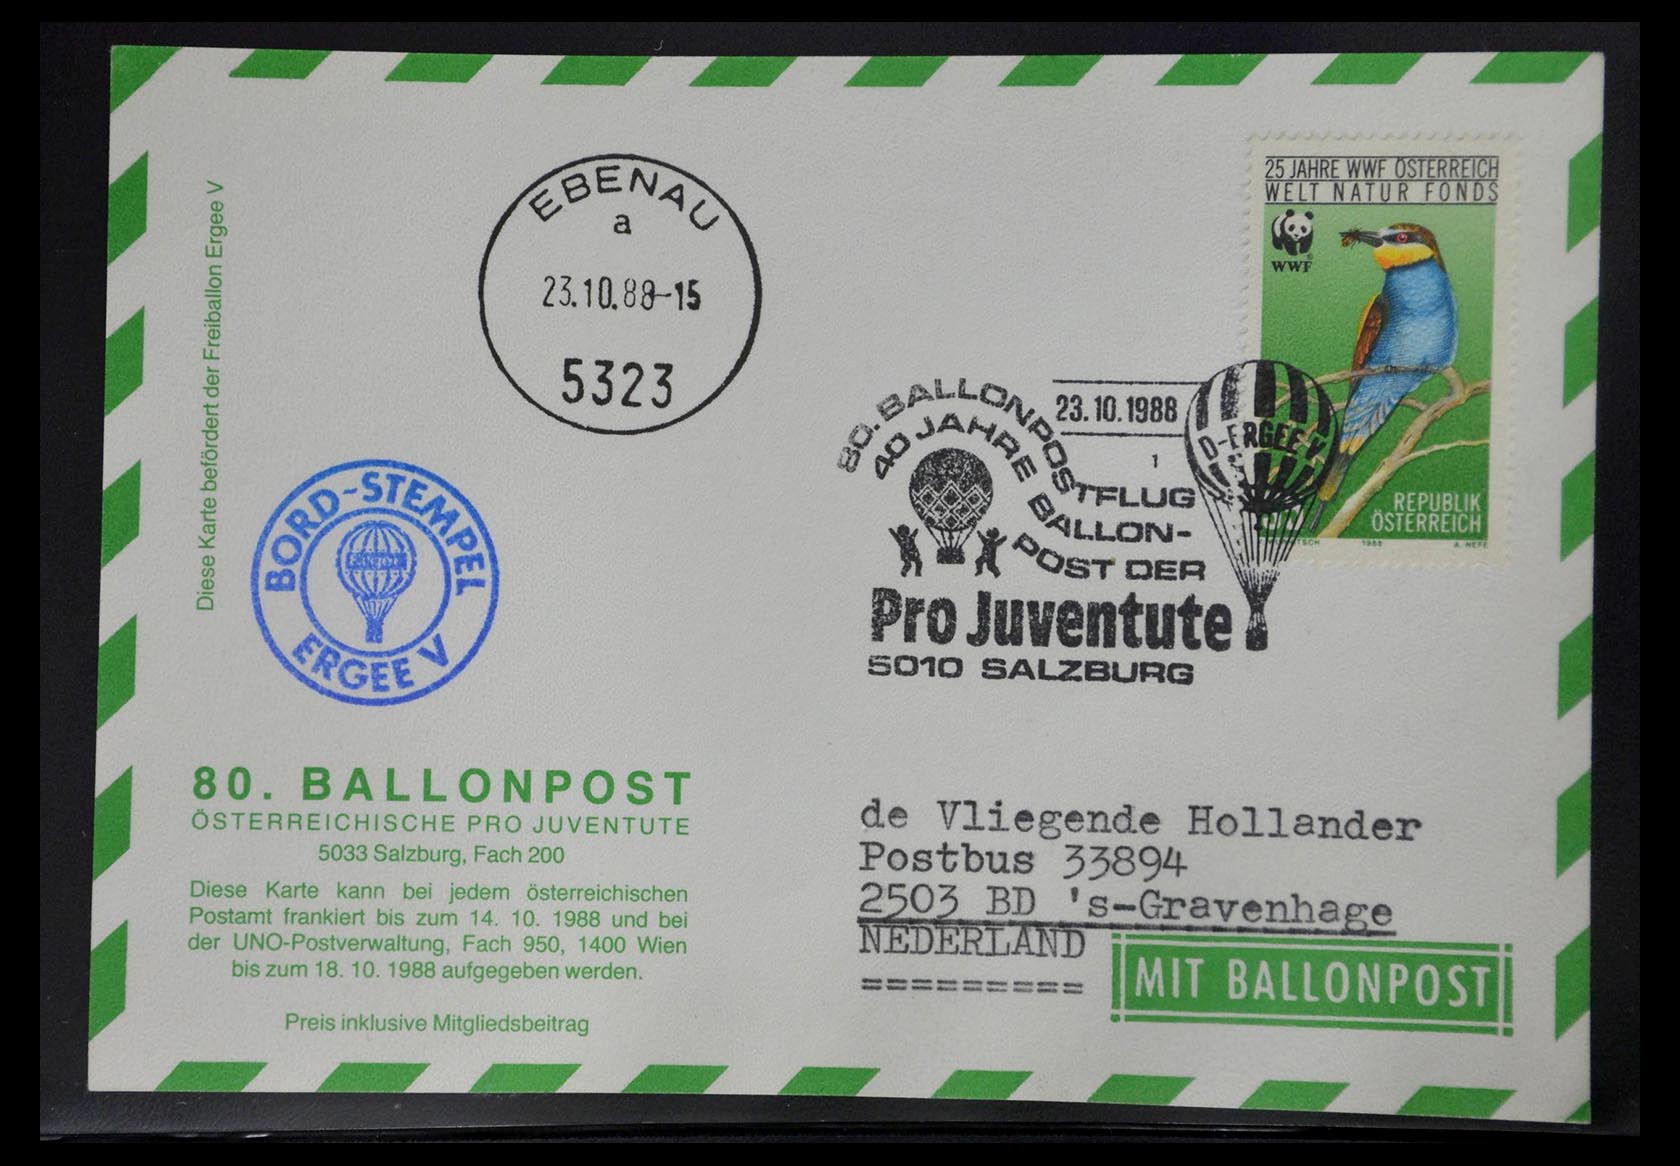 28889 019 - 28889 Balloon post 1927-2001.